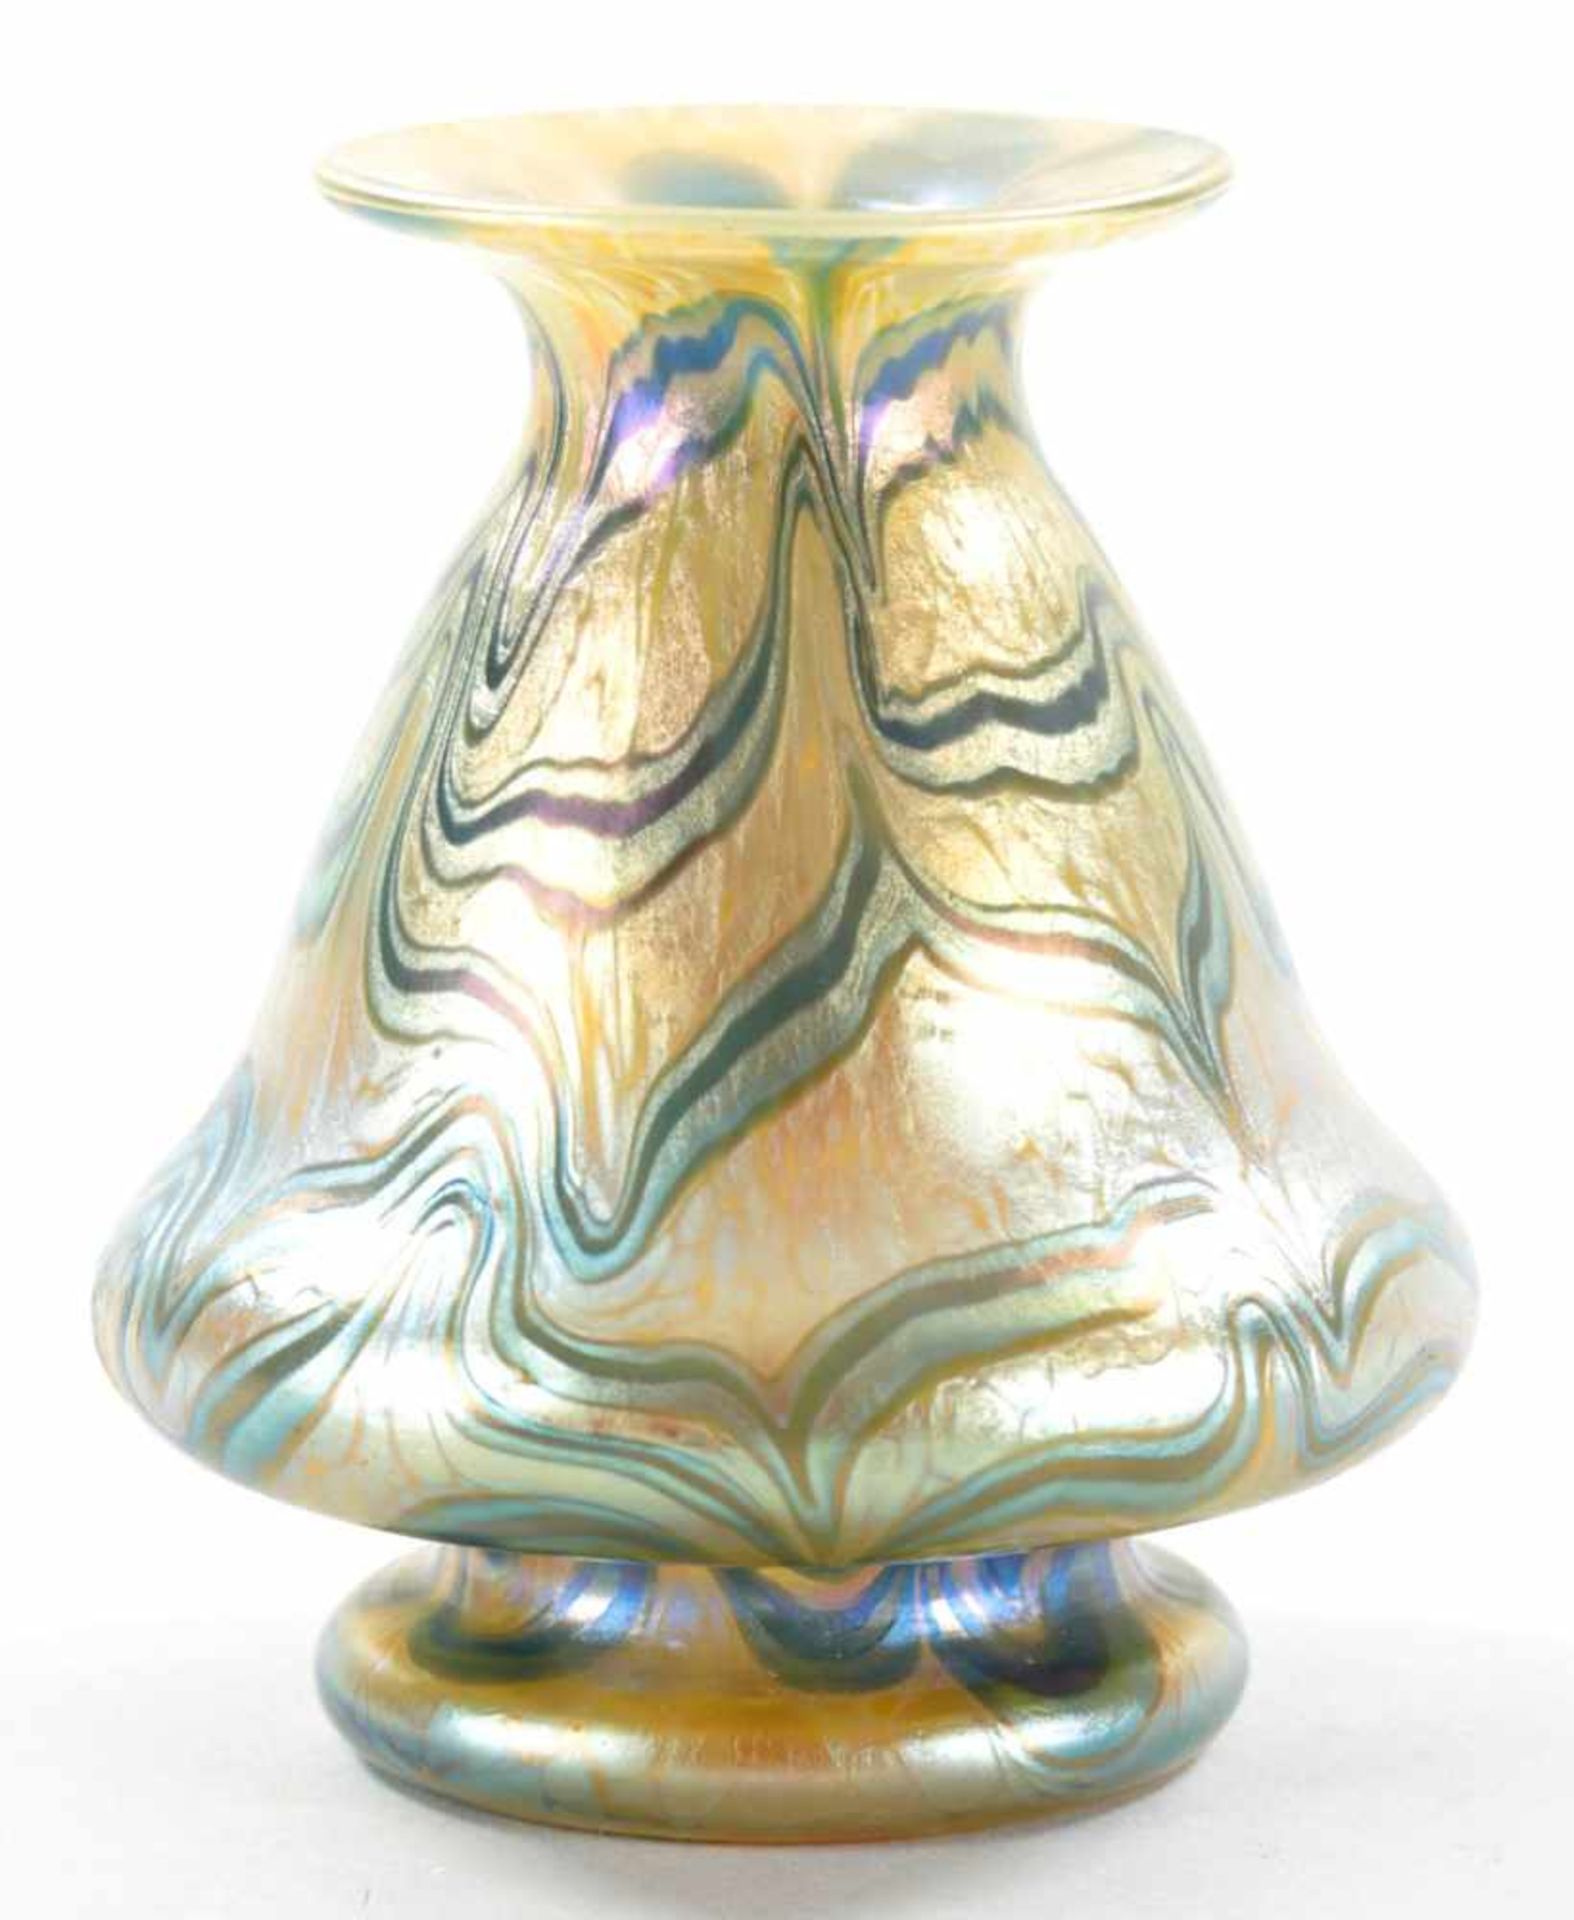 Kl. Jugendstil-VaseGlas, Loetz/Tiffany (?), um 1900/Anf. 20.Jh. Konische Form m. goldener